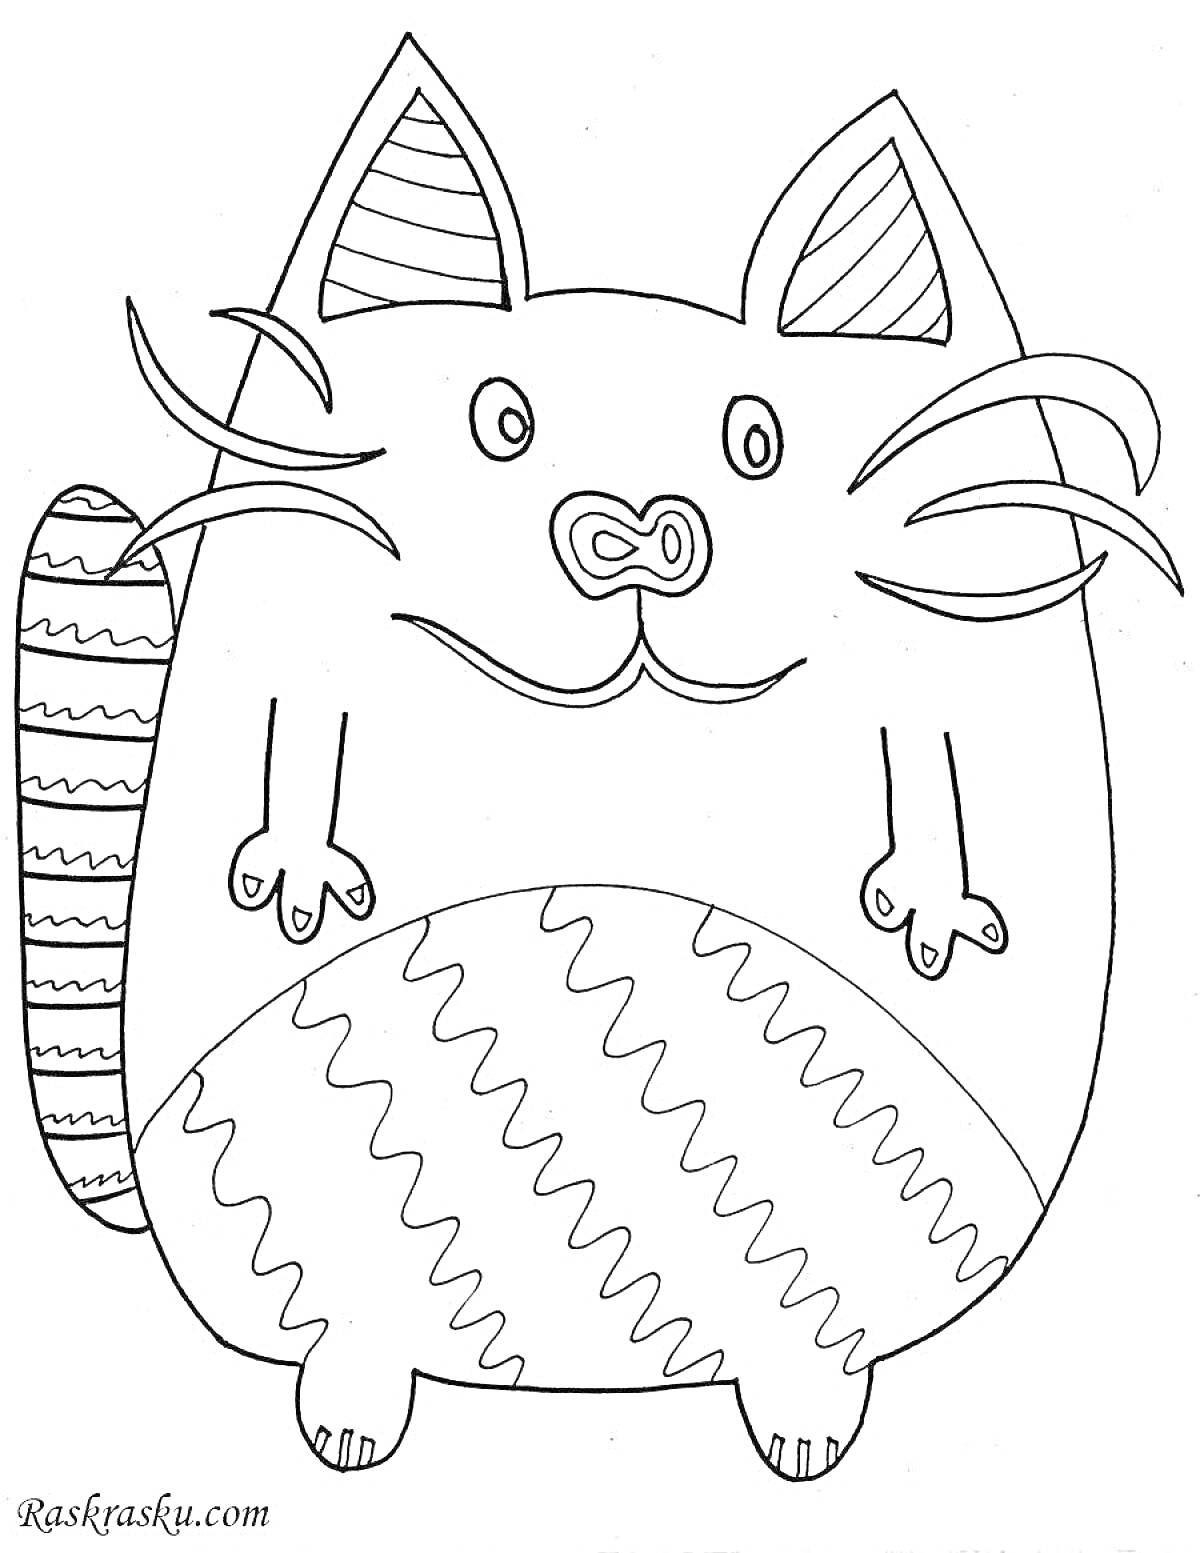 Раскраска Кот с большими ушами, полосатым хвостом и зигзагообразным узором на животе